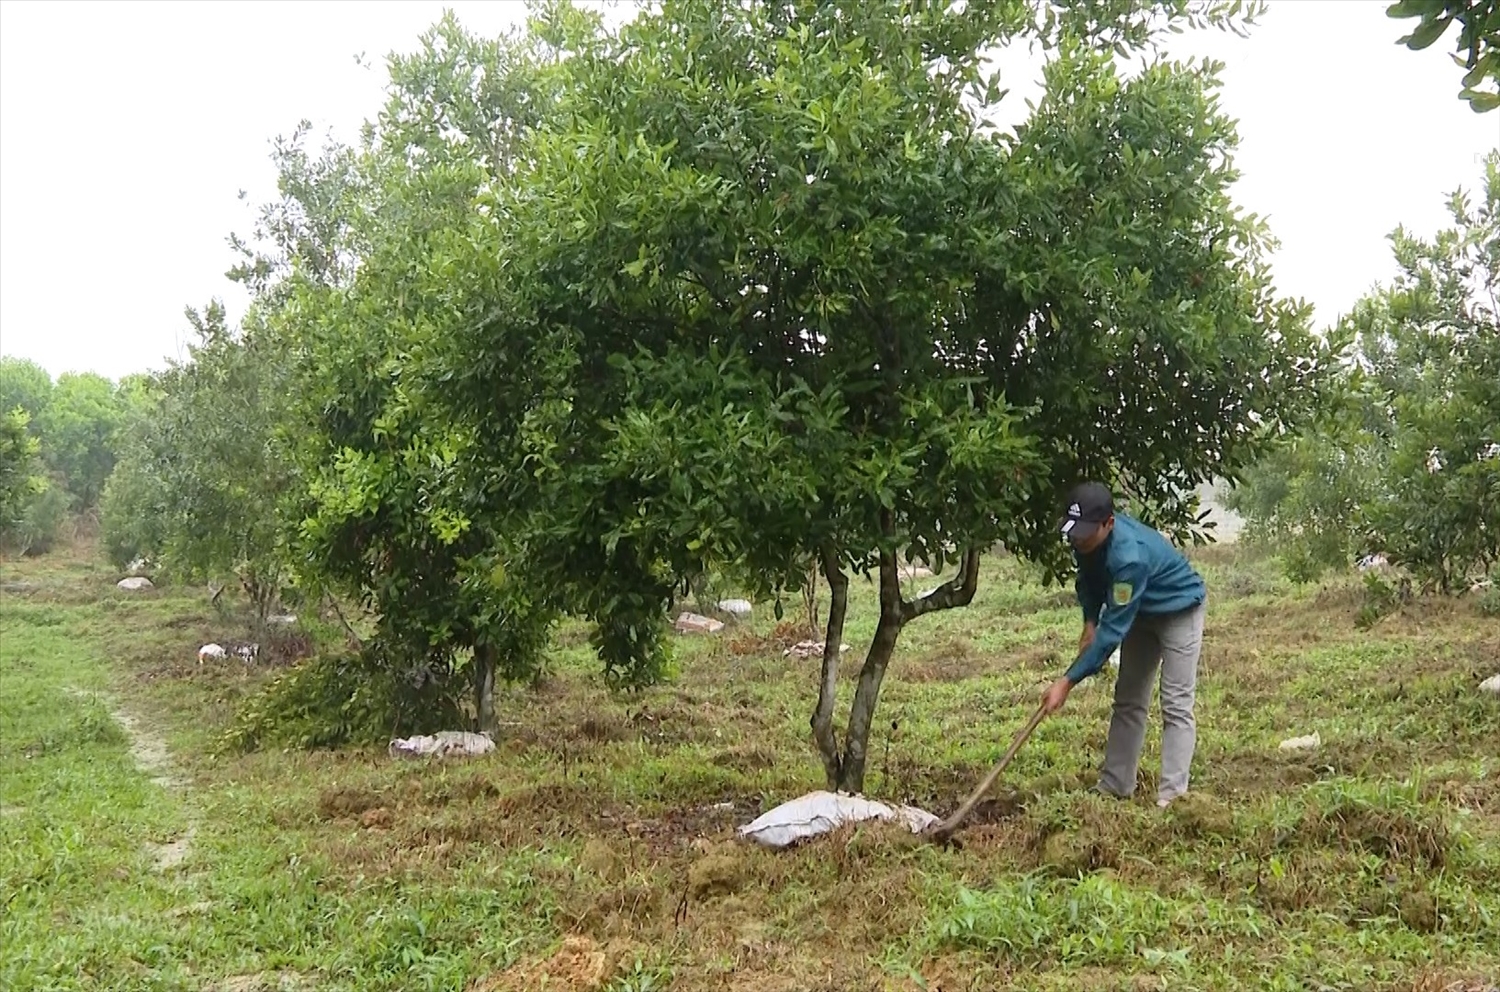 Mô hình trồng cây mắc ca tại huyện Như Xuân được nhiều đoàn viên, thanh niên lựa chọn để khởi nghiệp